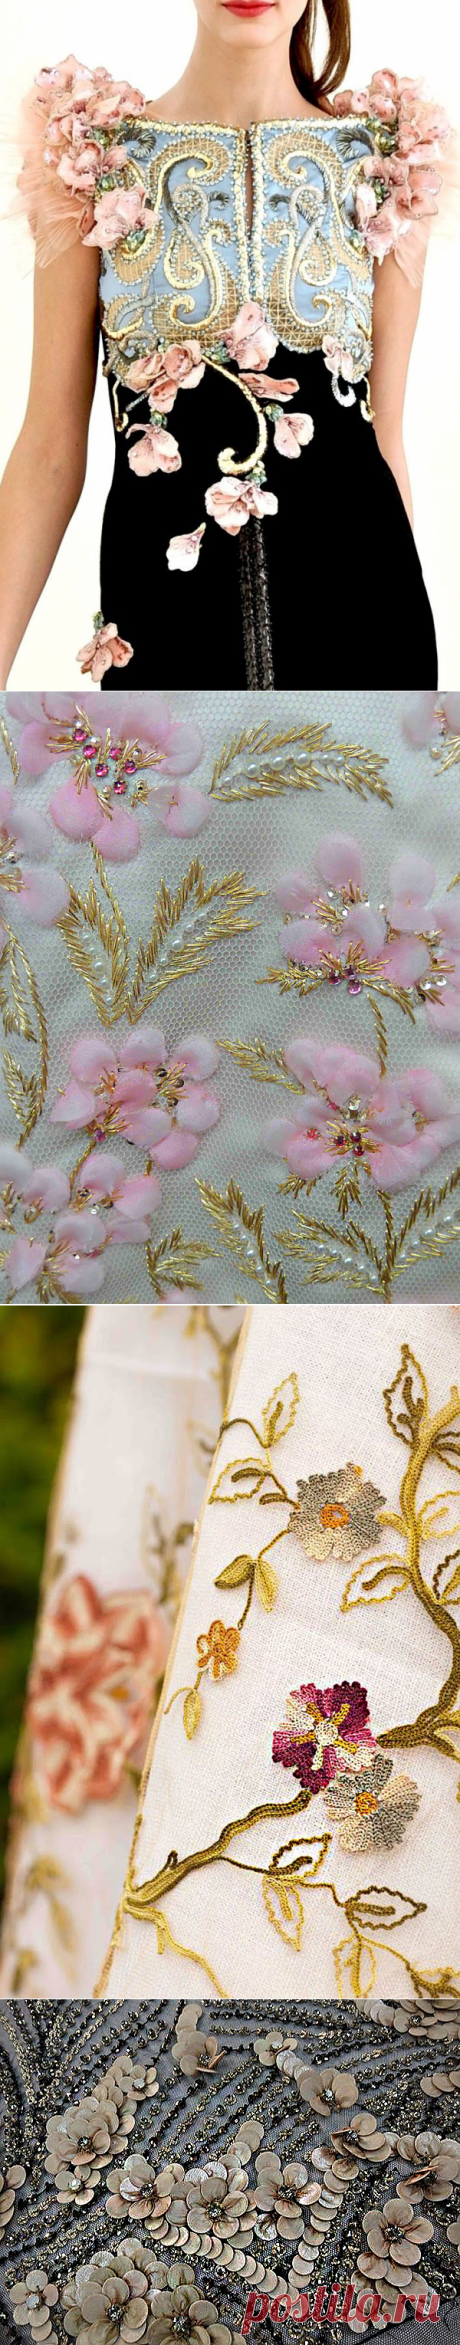 Текстурная вышивка в коллекциях высокой моды. Цветочные мотивы